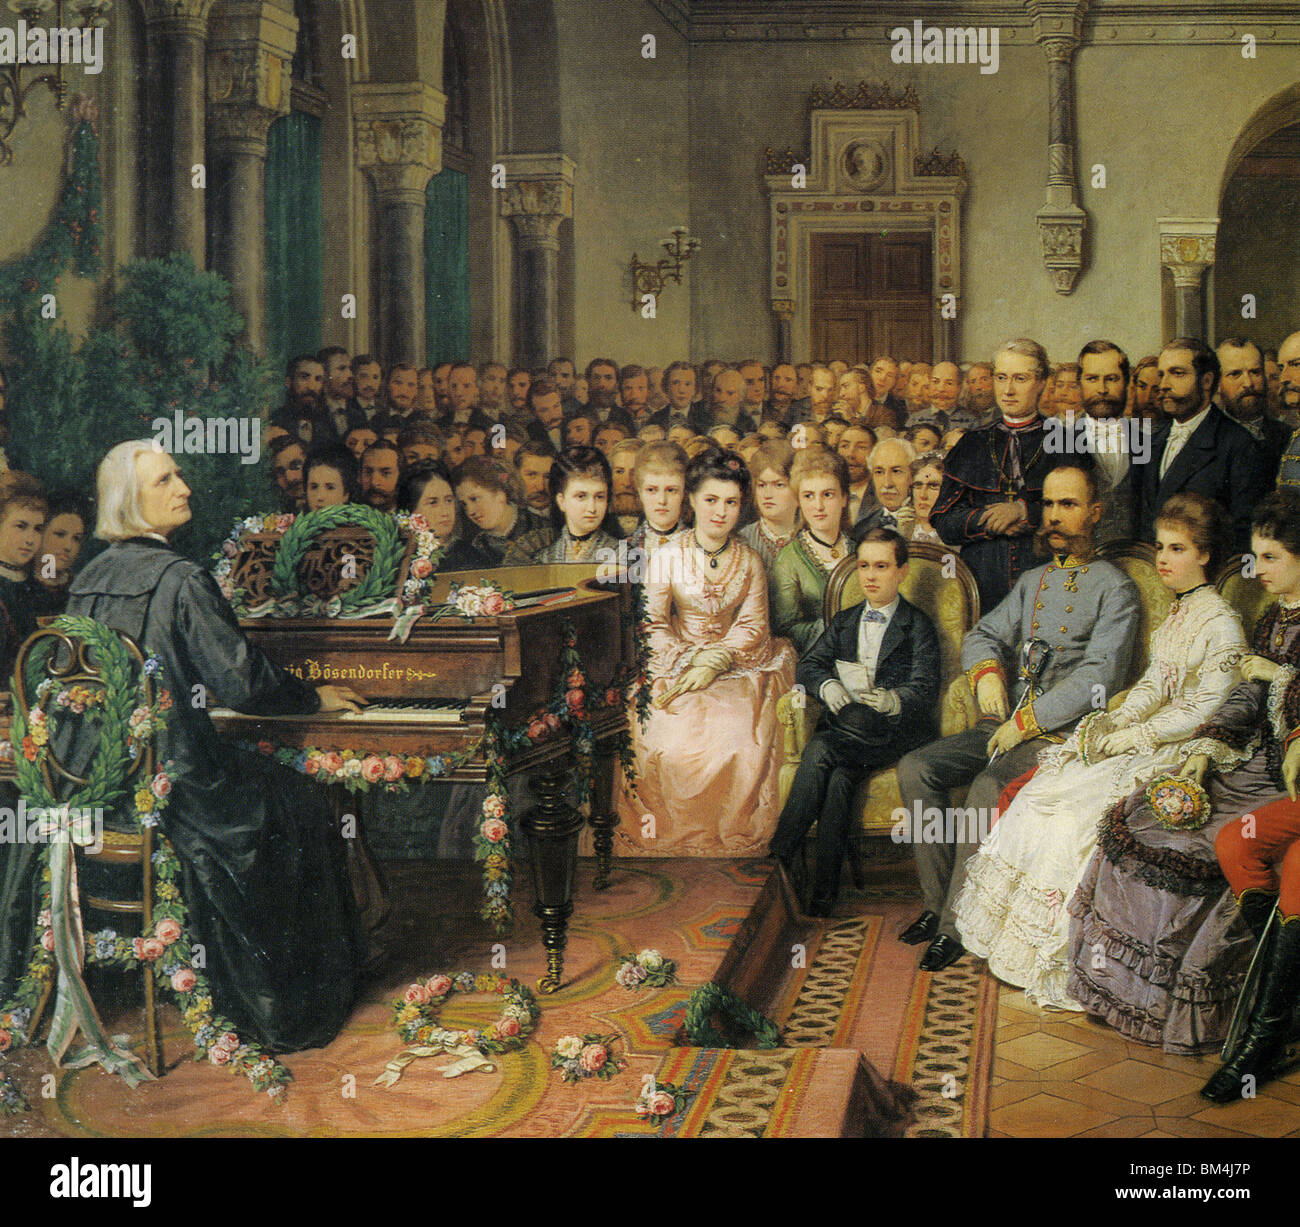 FRANZ LISZT gibt ein Konzert für die kaiserliche Familie in Wien um 1880 Stockfoto